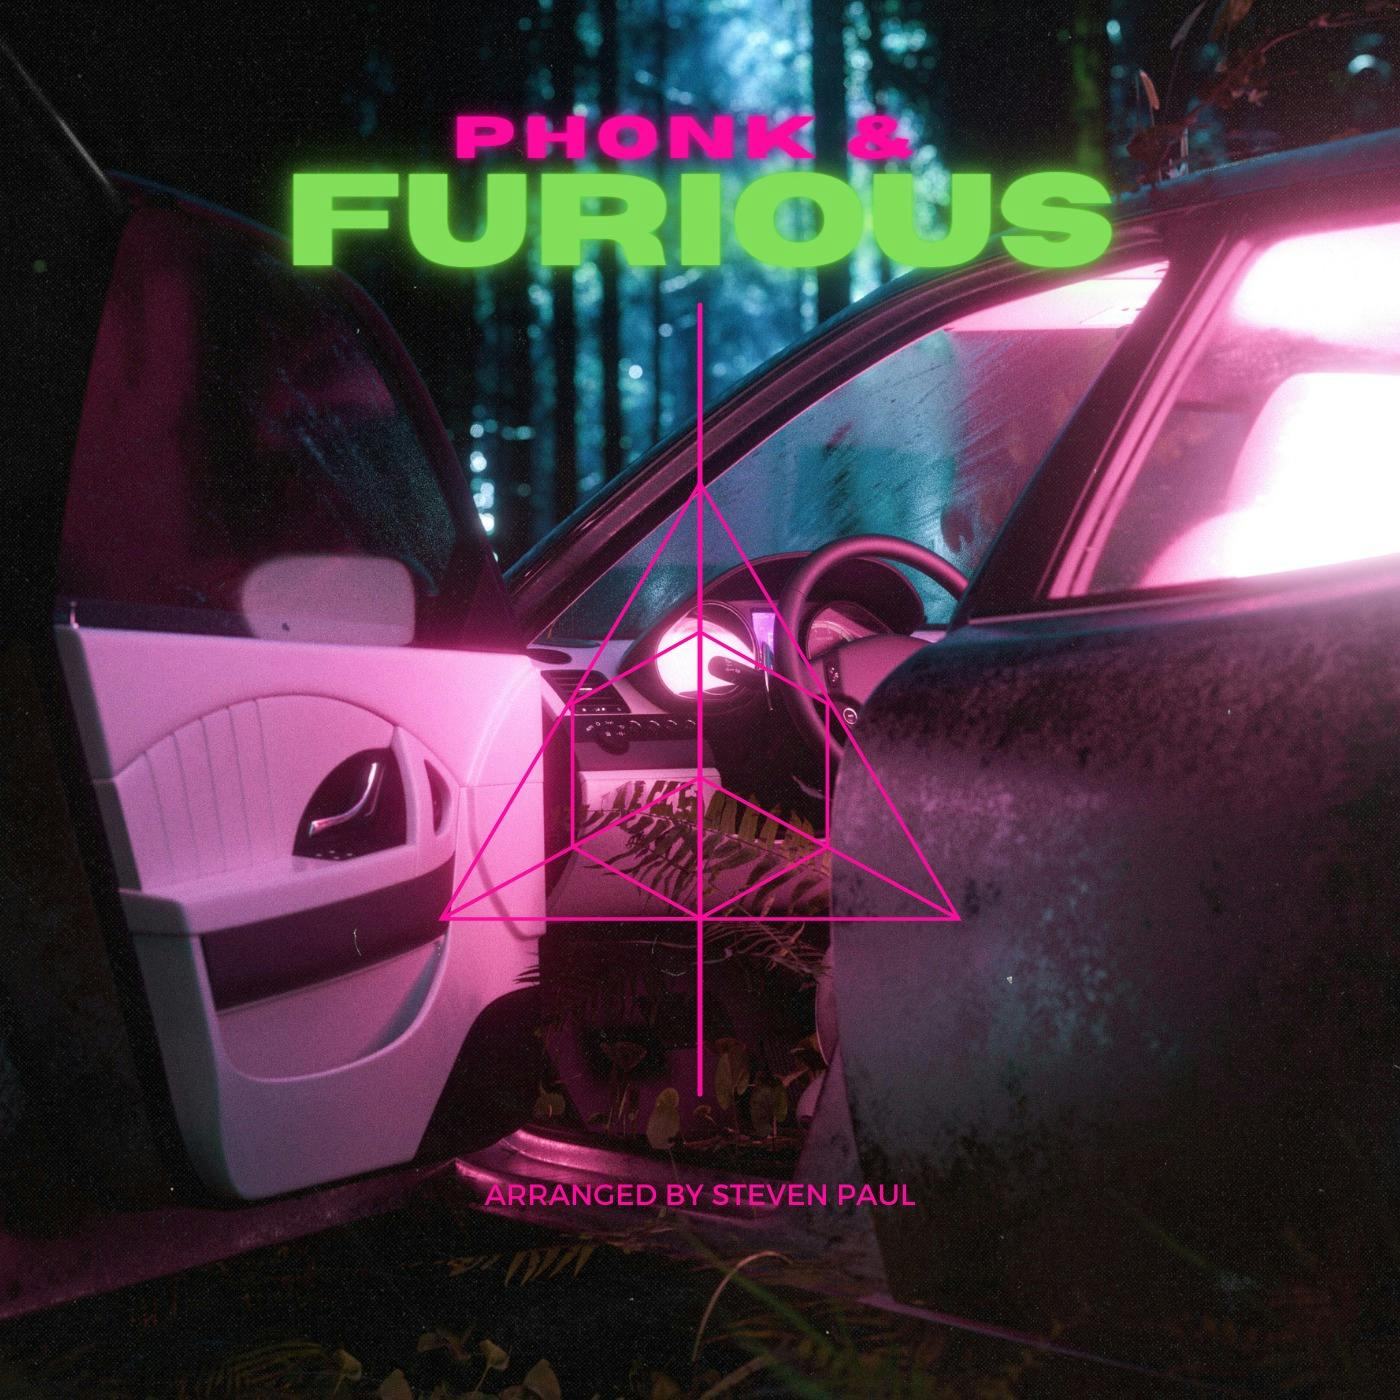 Phonk & Furious